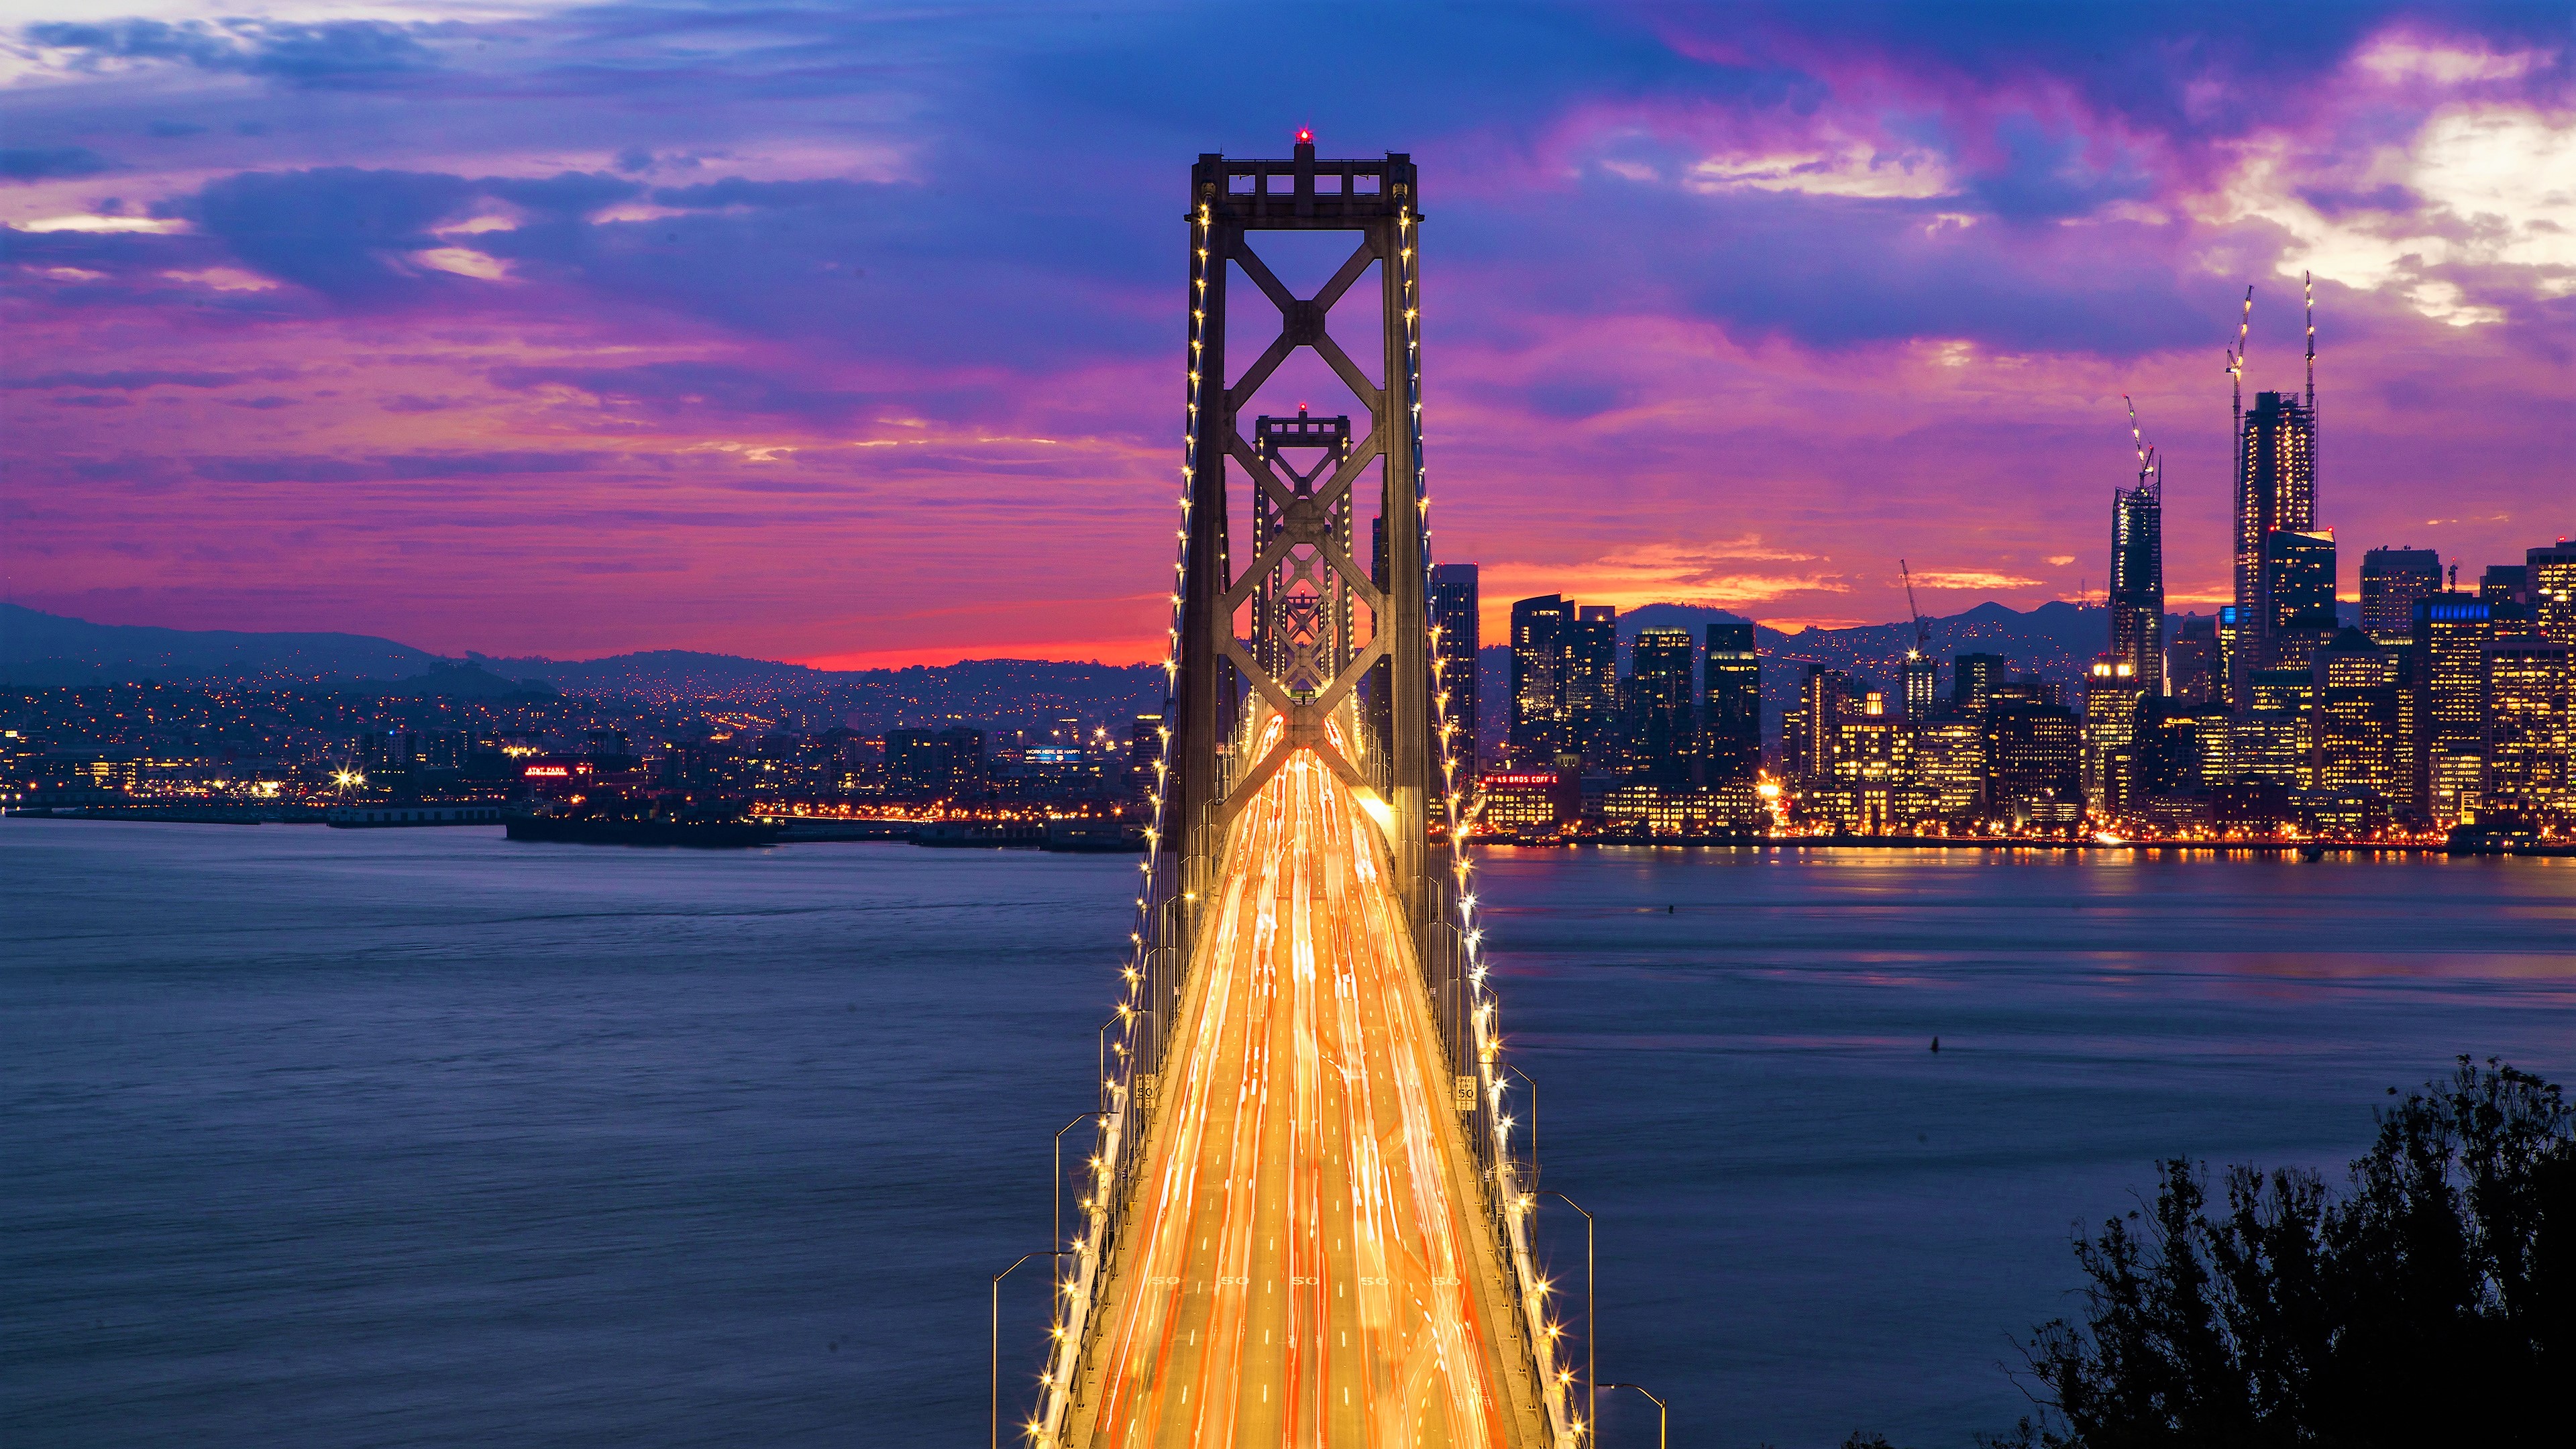 Download mobile wallpaper Bridges, Sunset, Light, Bridge, California, San Francisco, Bay Bridge, Man Made, Time Lapse for free.